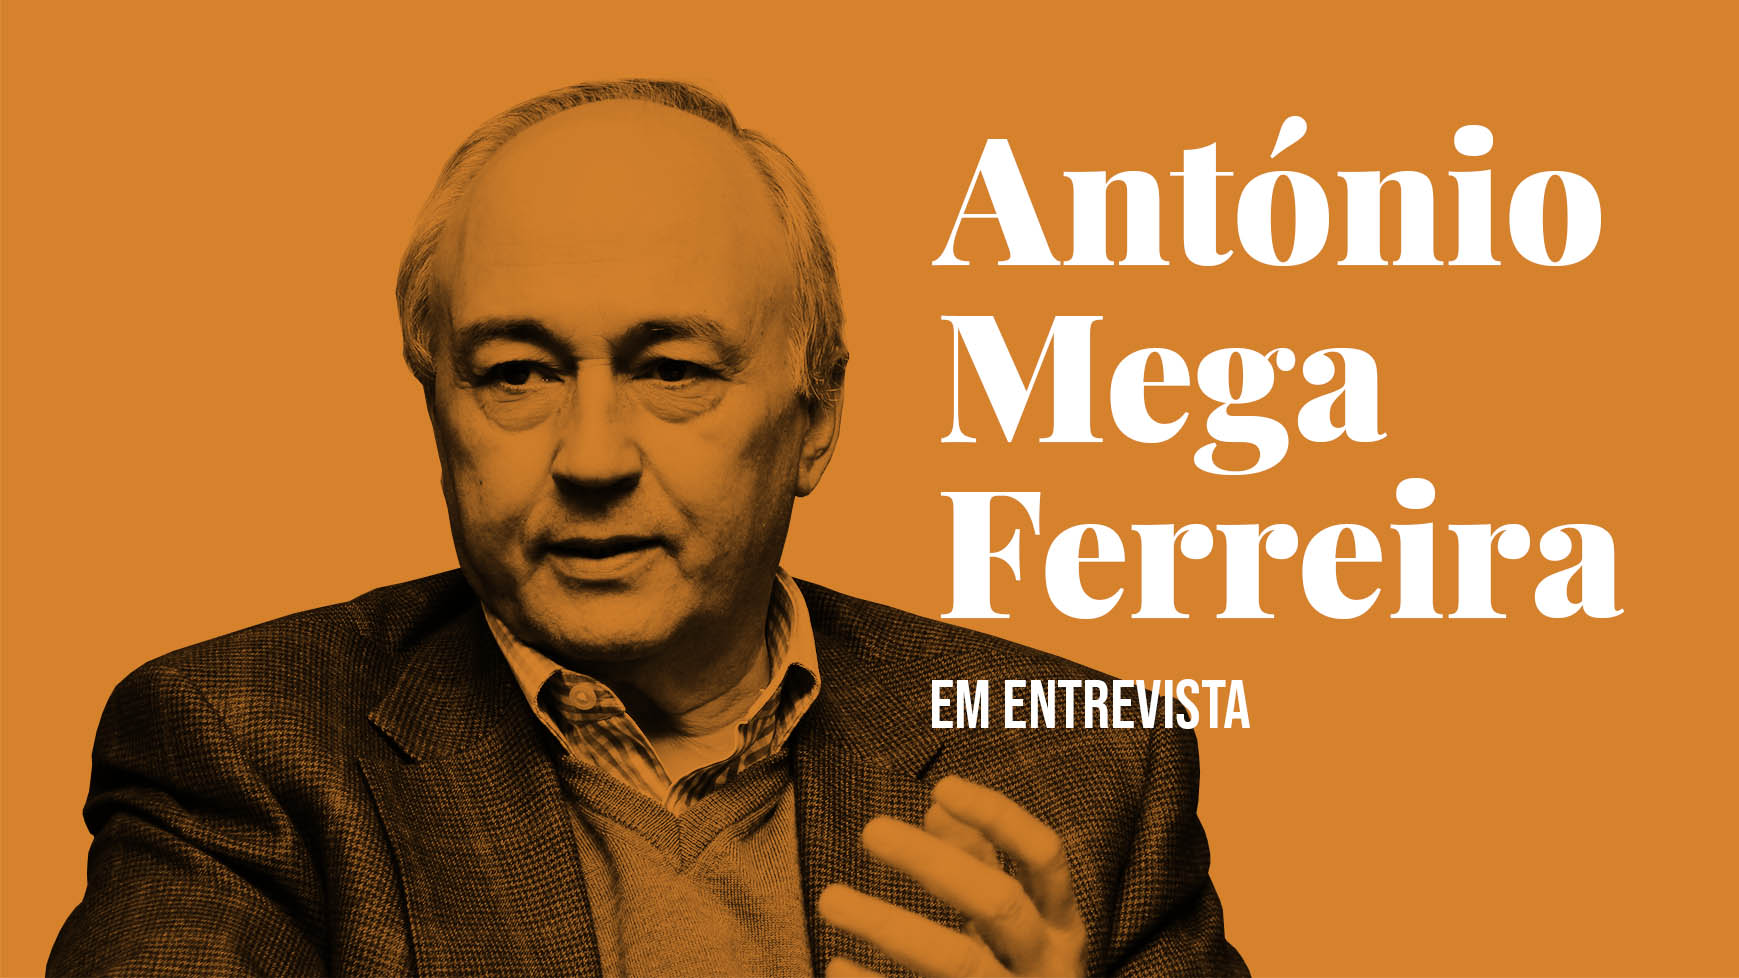 António Mega Ferreira em entrevista # 1/2 — «Toda a opção política deve obedecer a uma visão cultural»